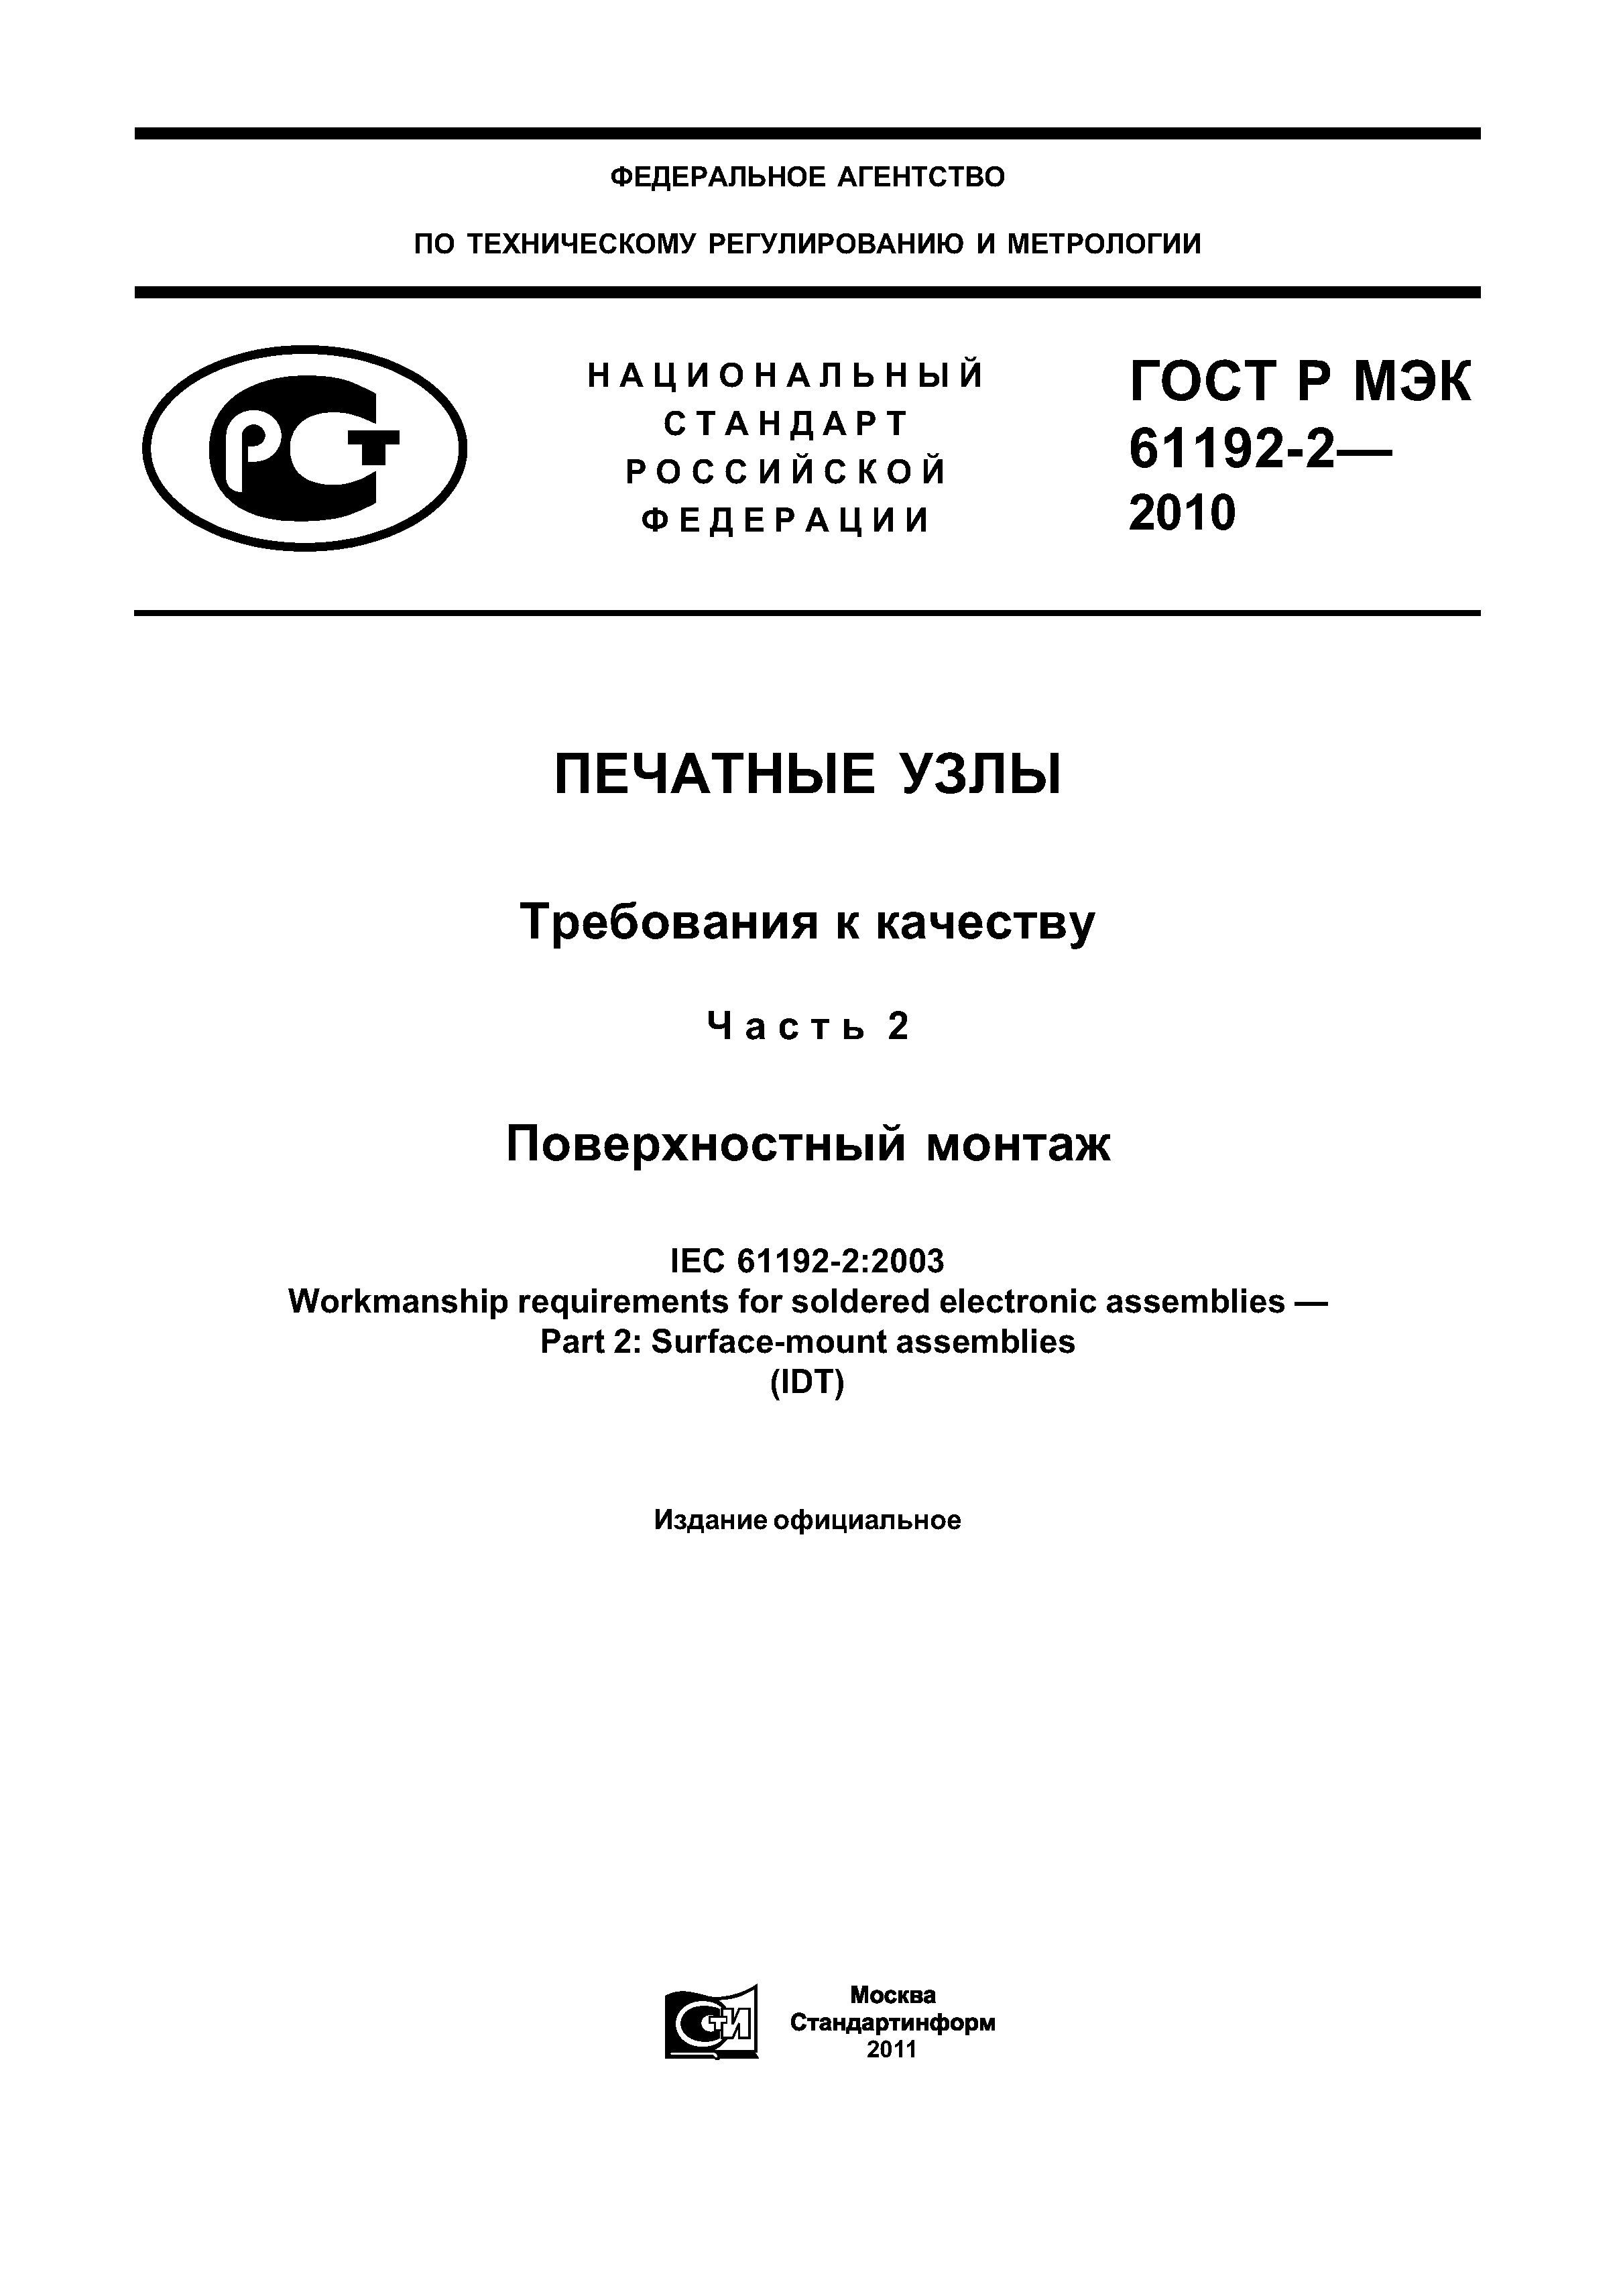 ГОСТ Р МЭК 61192-2-2010